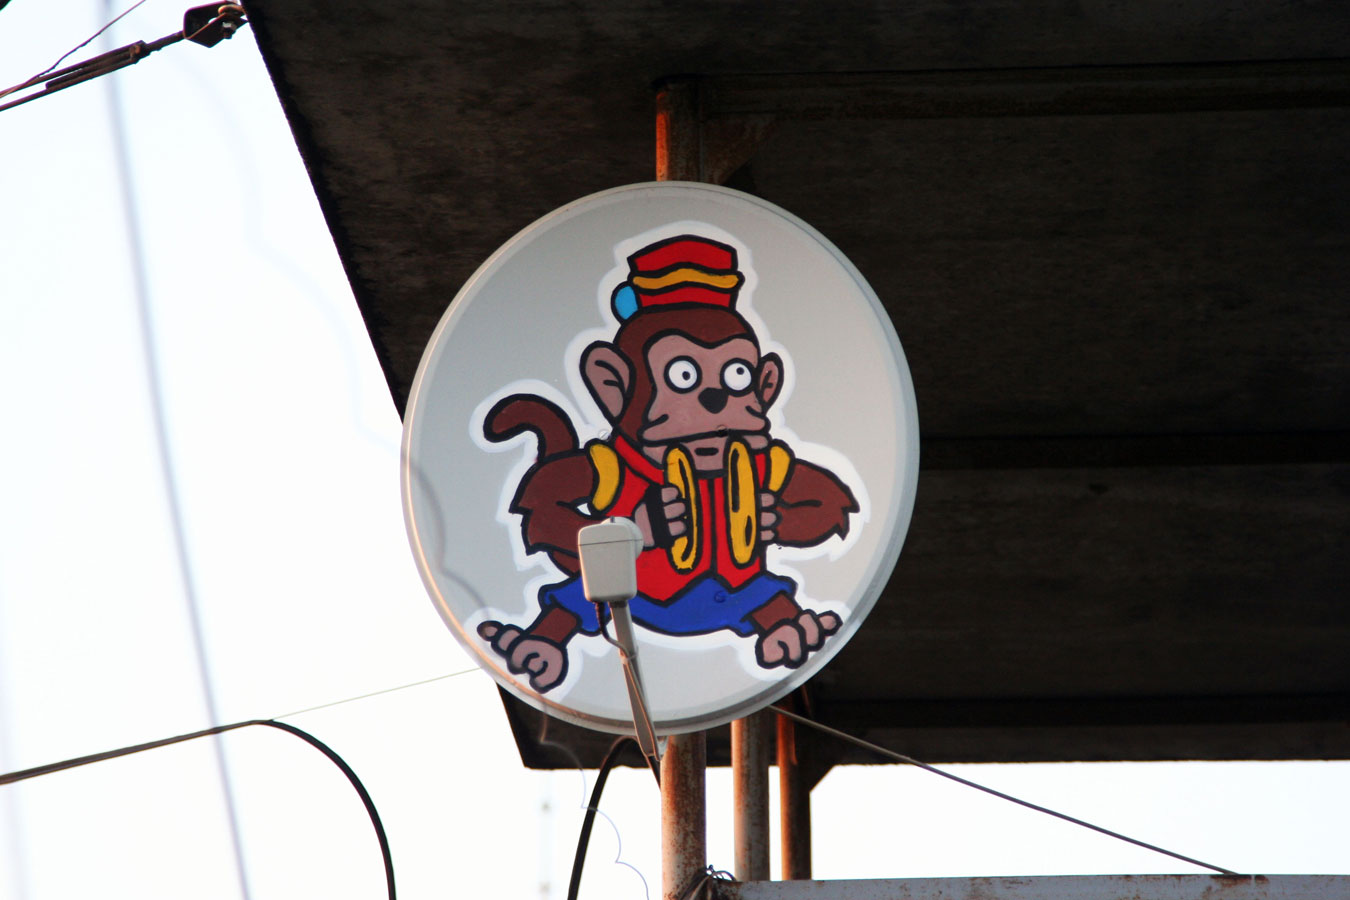  zukclub monkey moscow russia